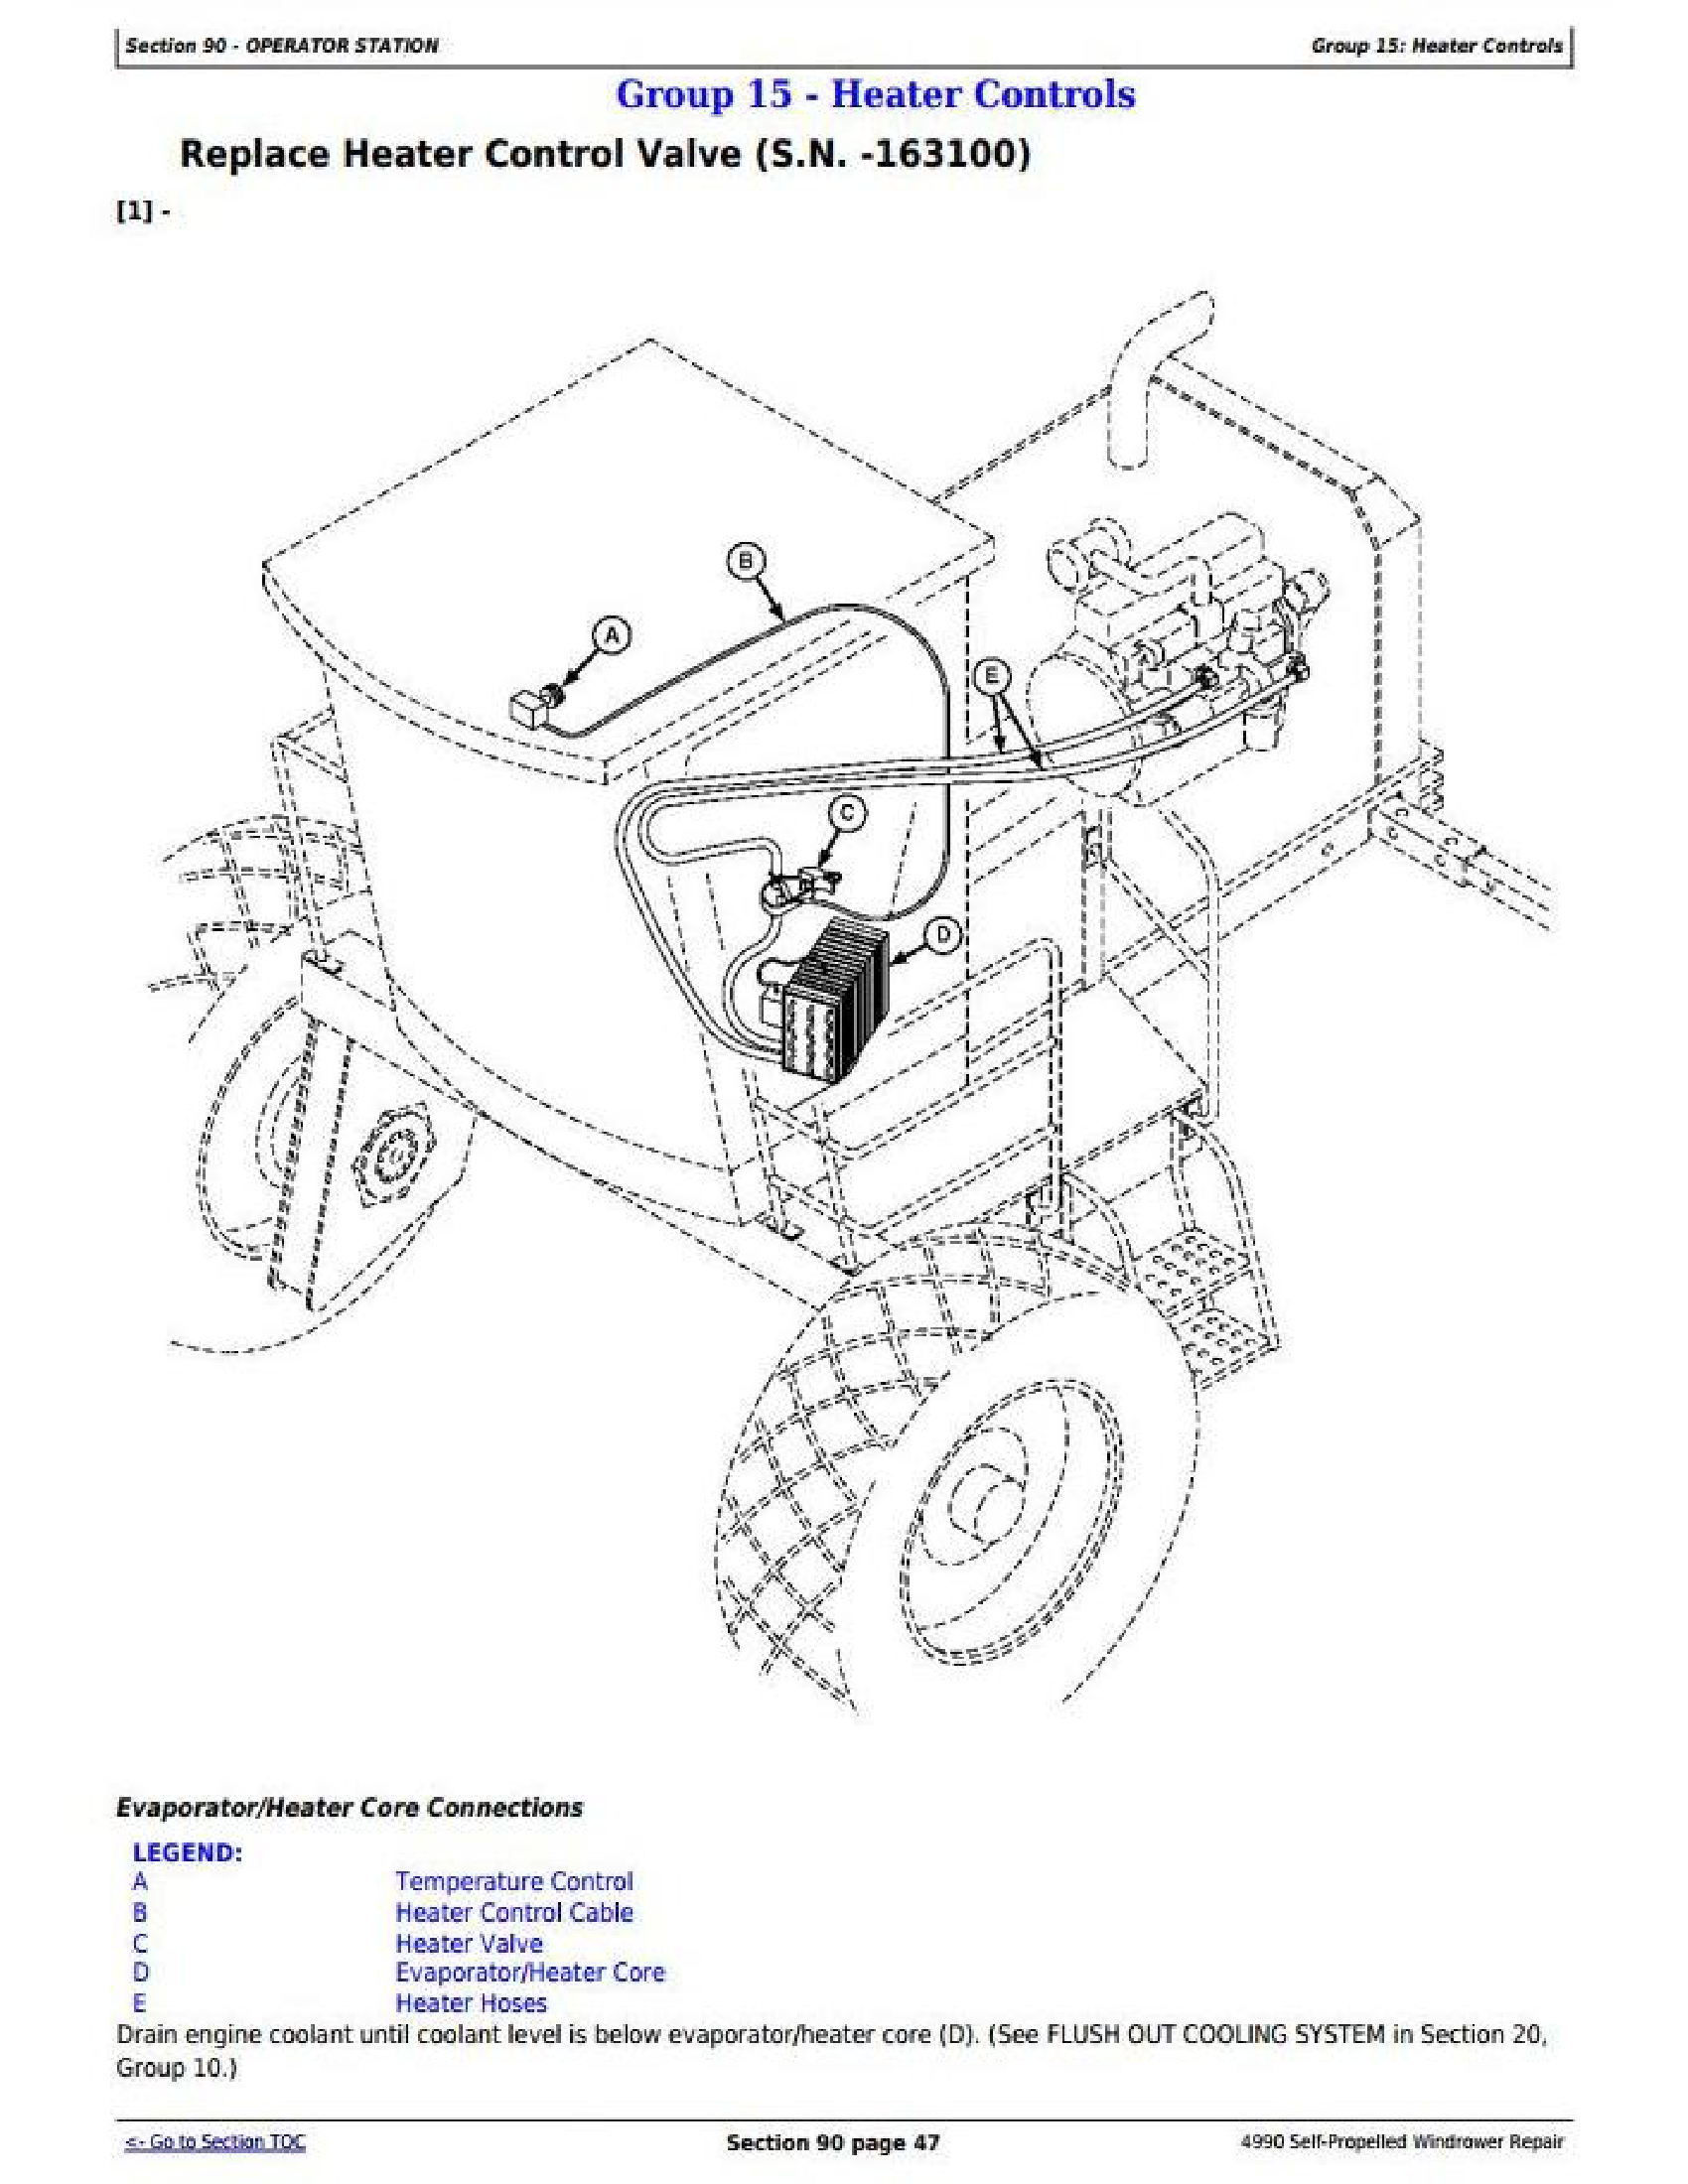 John Deere 4990 manual pdf